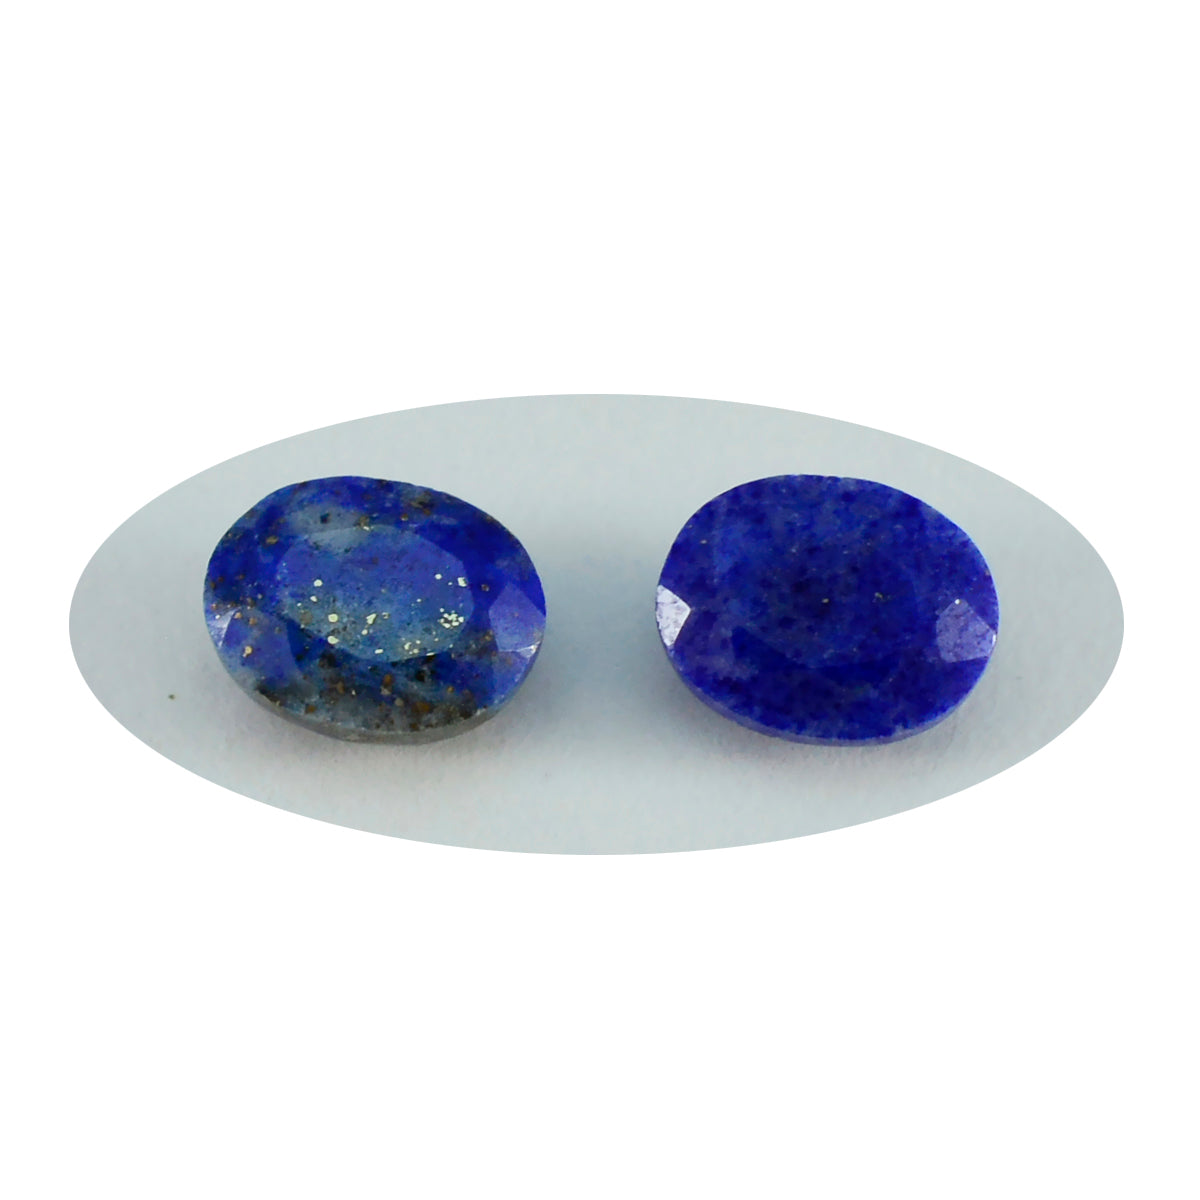 riyogems 1 шт. натуральный синий лазурит ограненный 4x6 мм овальной формы красивый качественный драгоценный камень